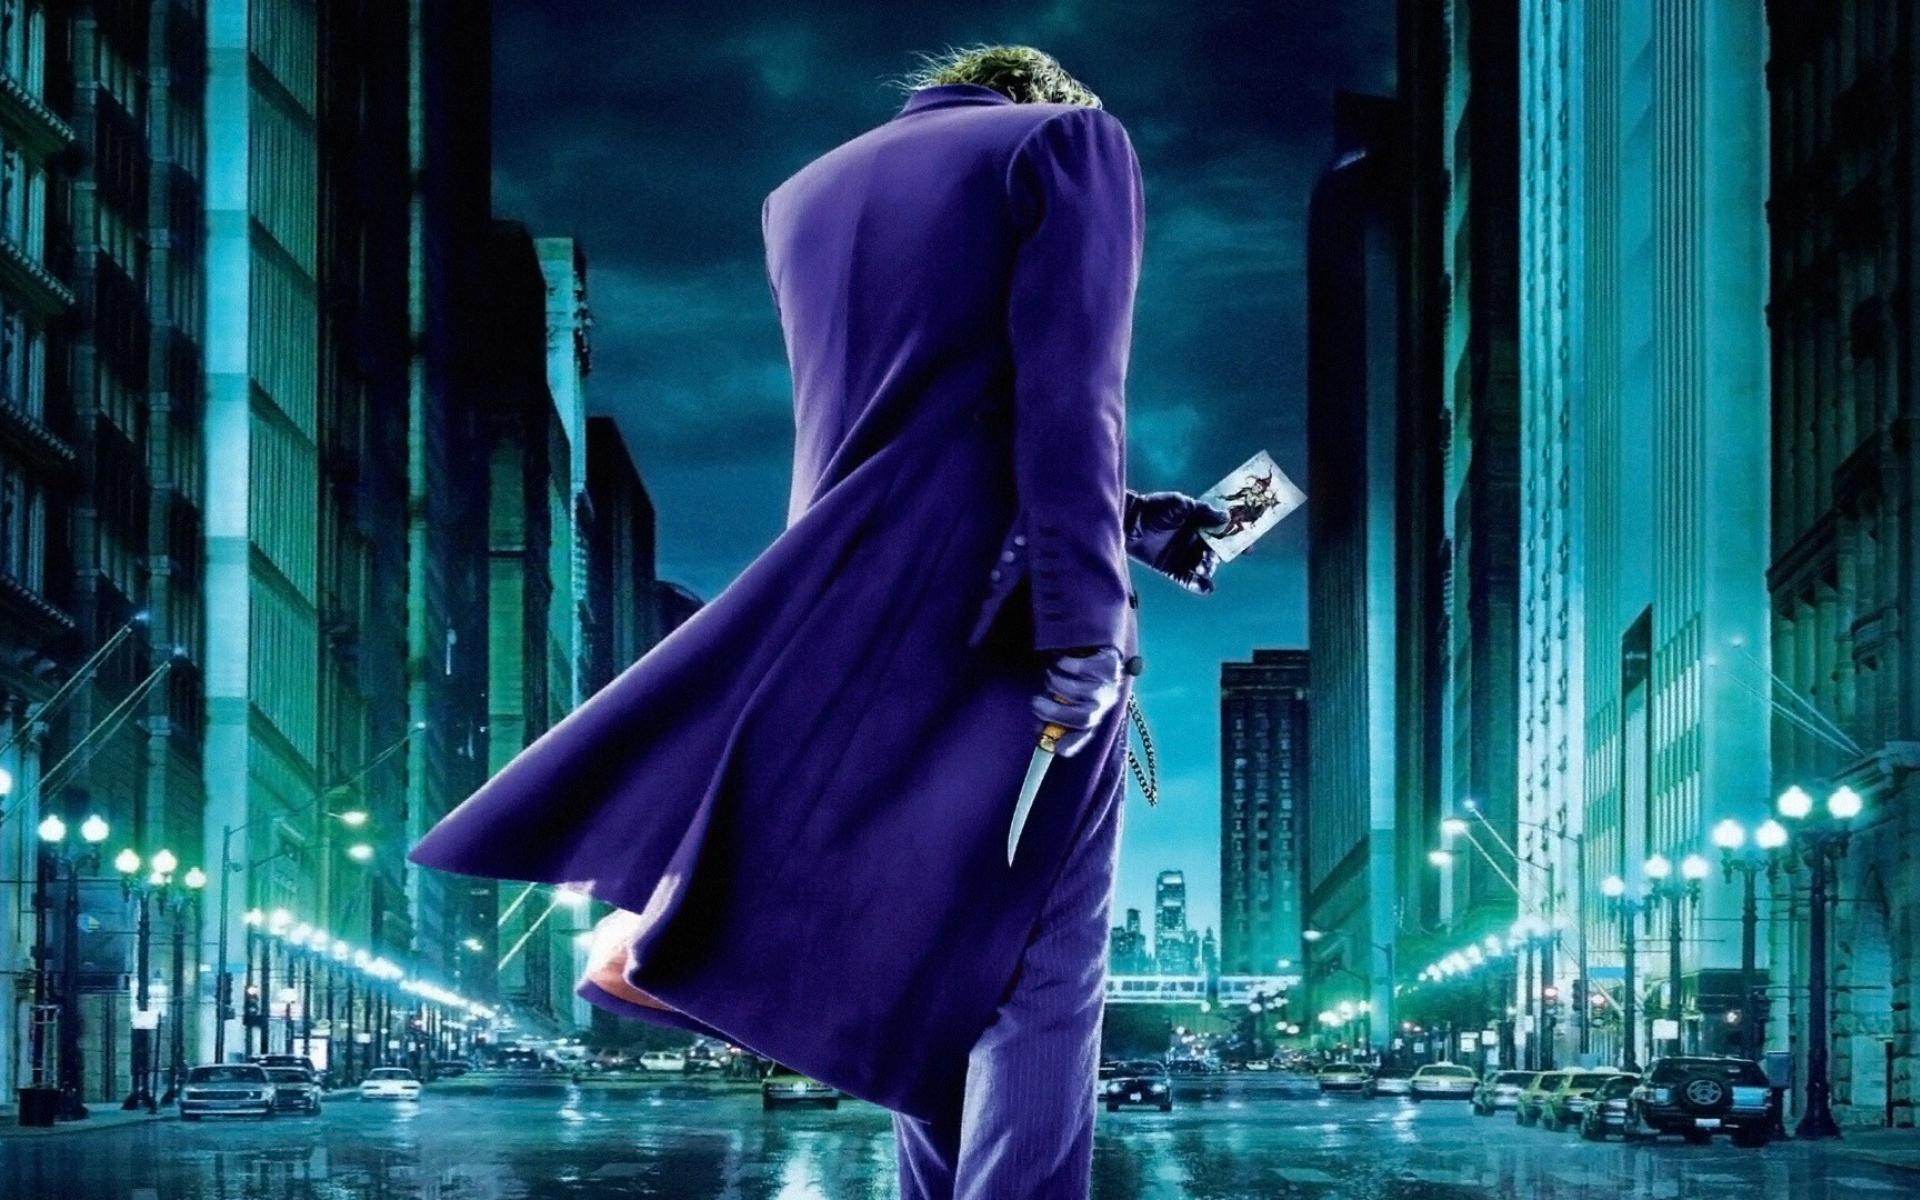 dark knight joker fond d'écran hd,violet,personnage fictif,oeuvre de cg,compositing numérique,bleu électrique